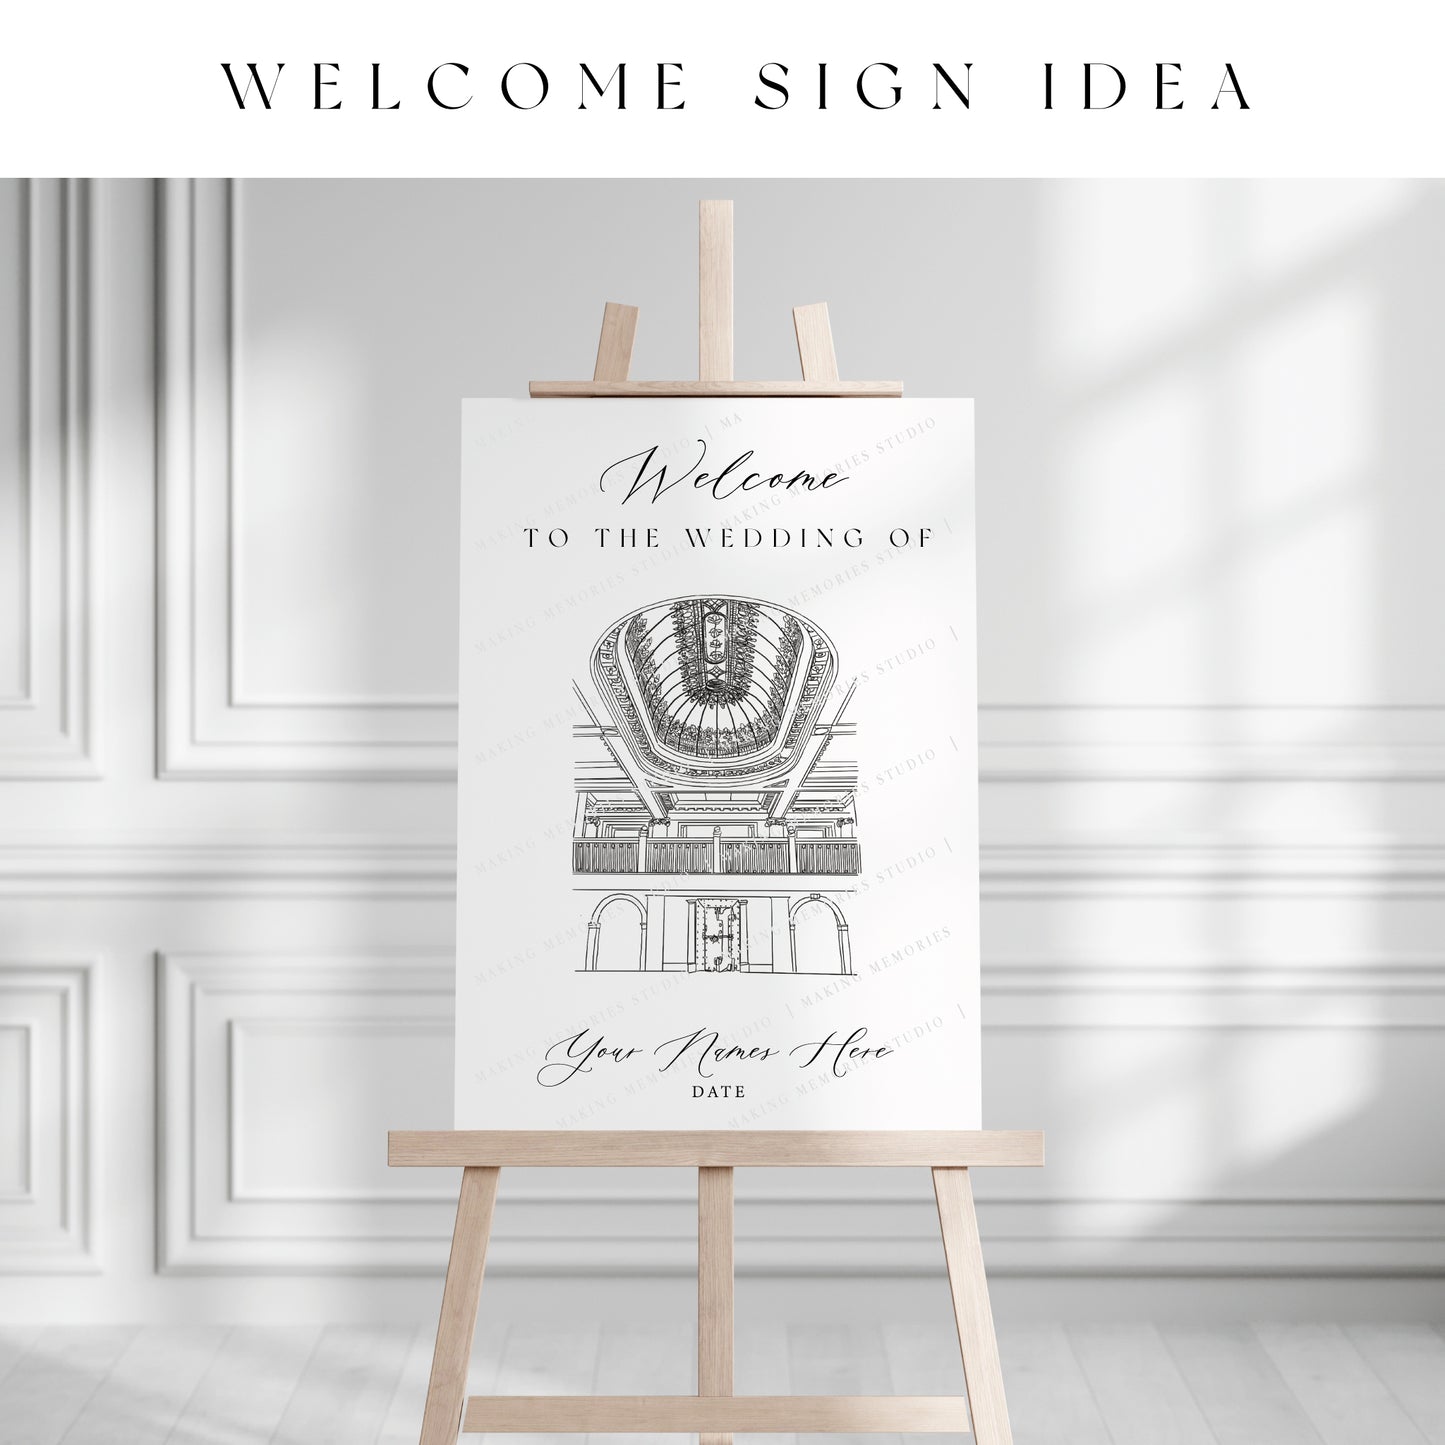 Digital File - Venue Illustration Welcome Sign